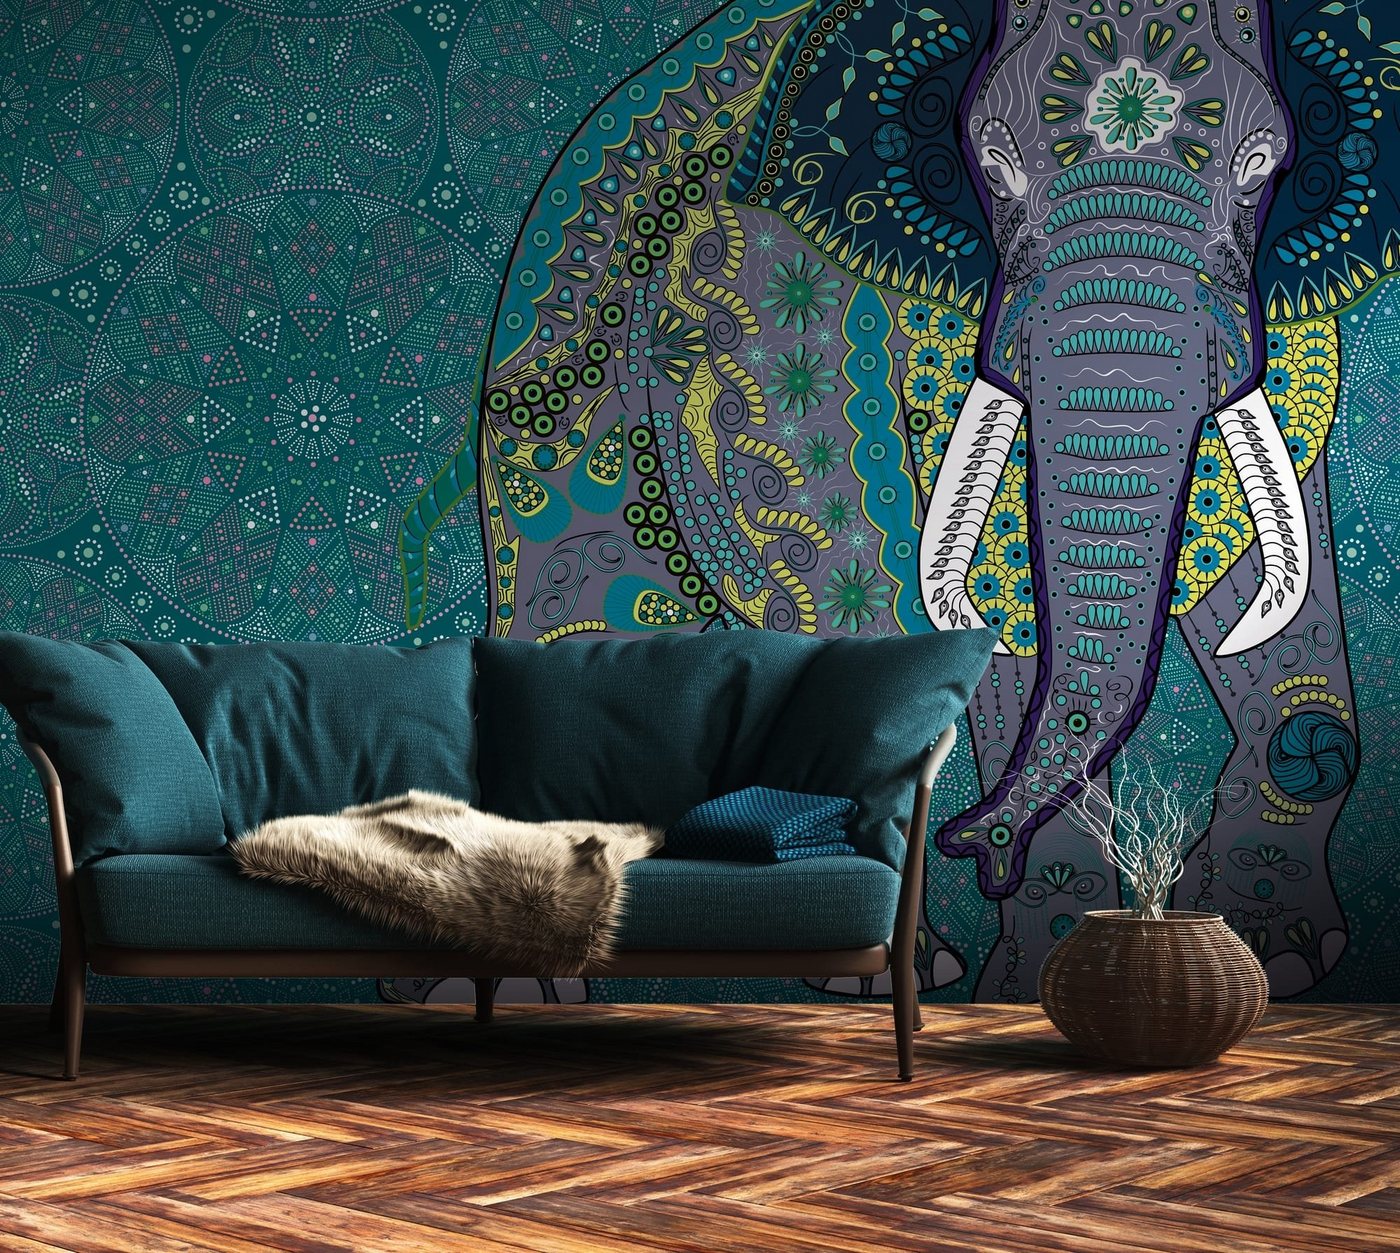 Newroom Vliestapete, [ 2,8 x 3,71 m ] großzügiges Motiv - kein wiederkehrendes Muster - nahtlos große Flächen möglich - Fototapete Wandbild Elefant Orientalisch Asiatisch Made in Germany von Newroom